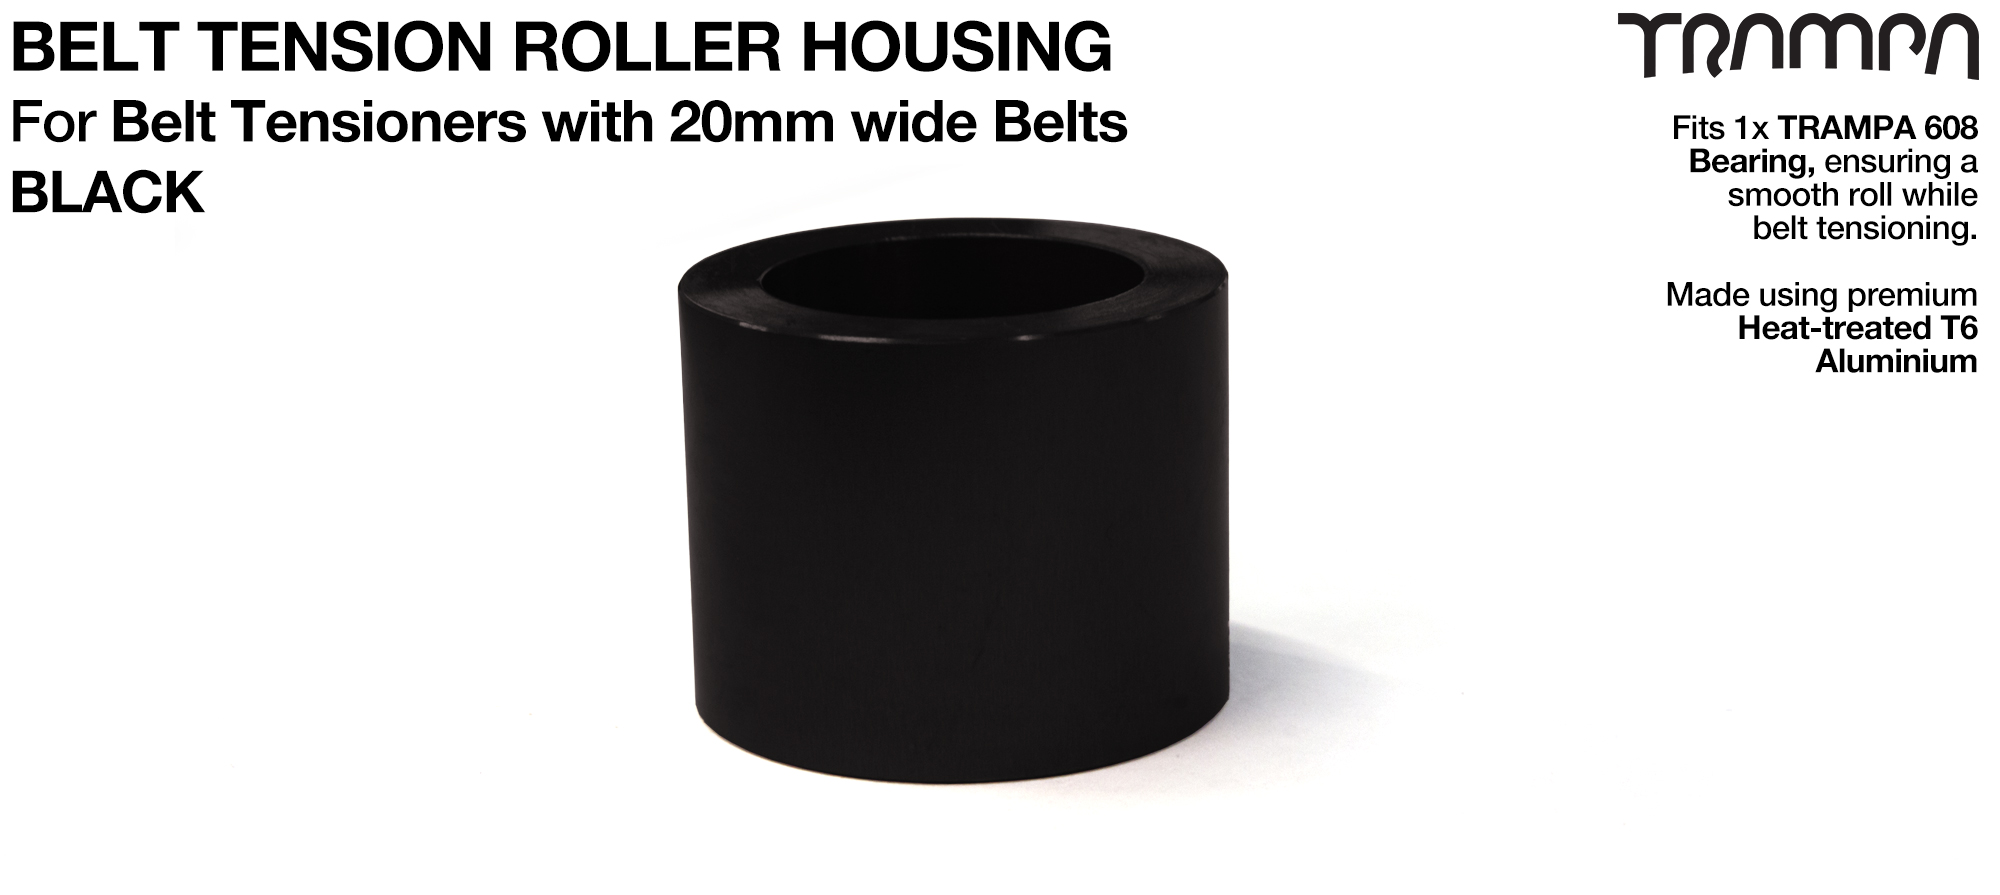 Belt Tension Roller Housing for 20mm Belts - BLACK